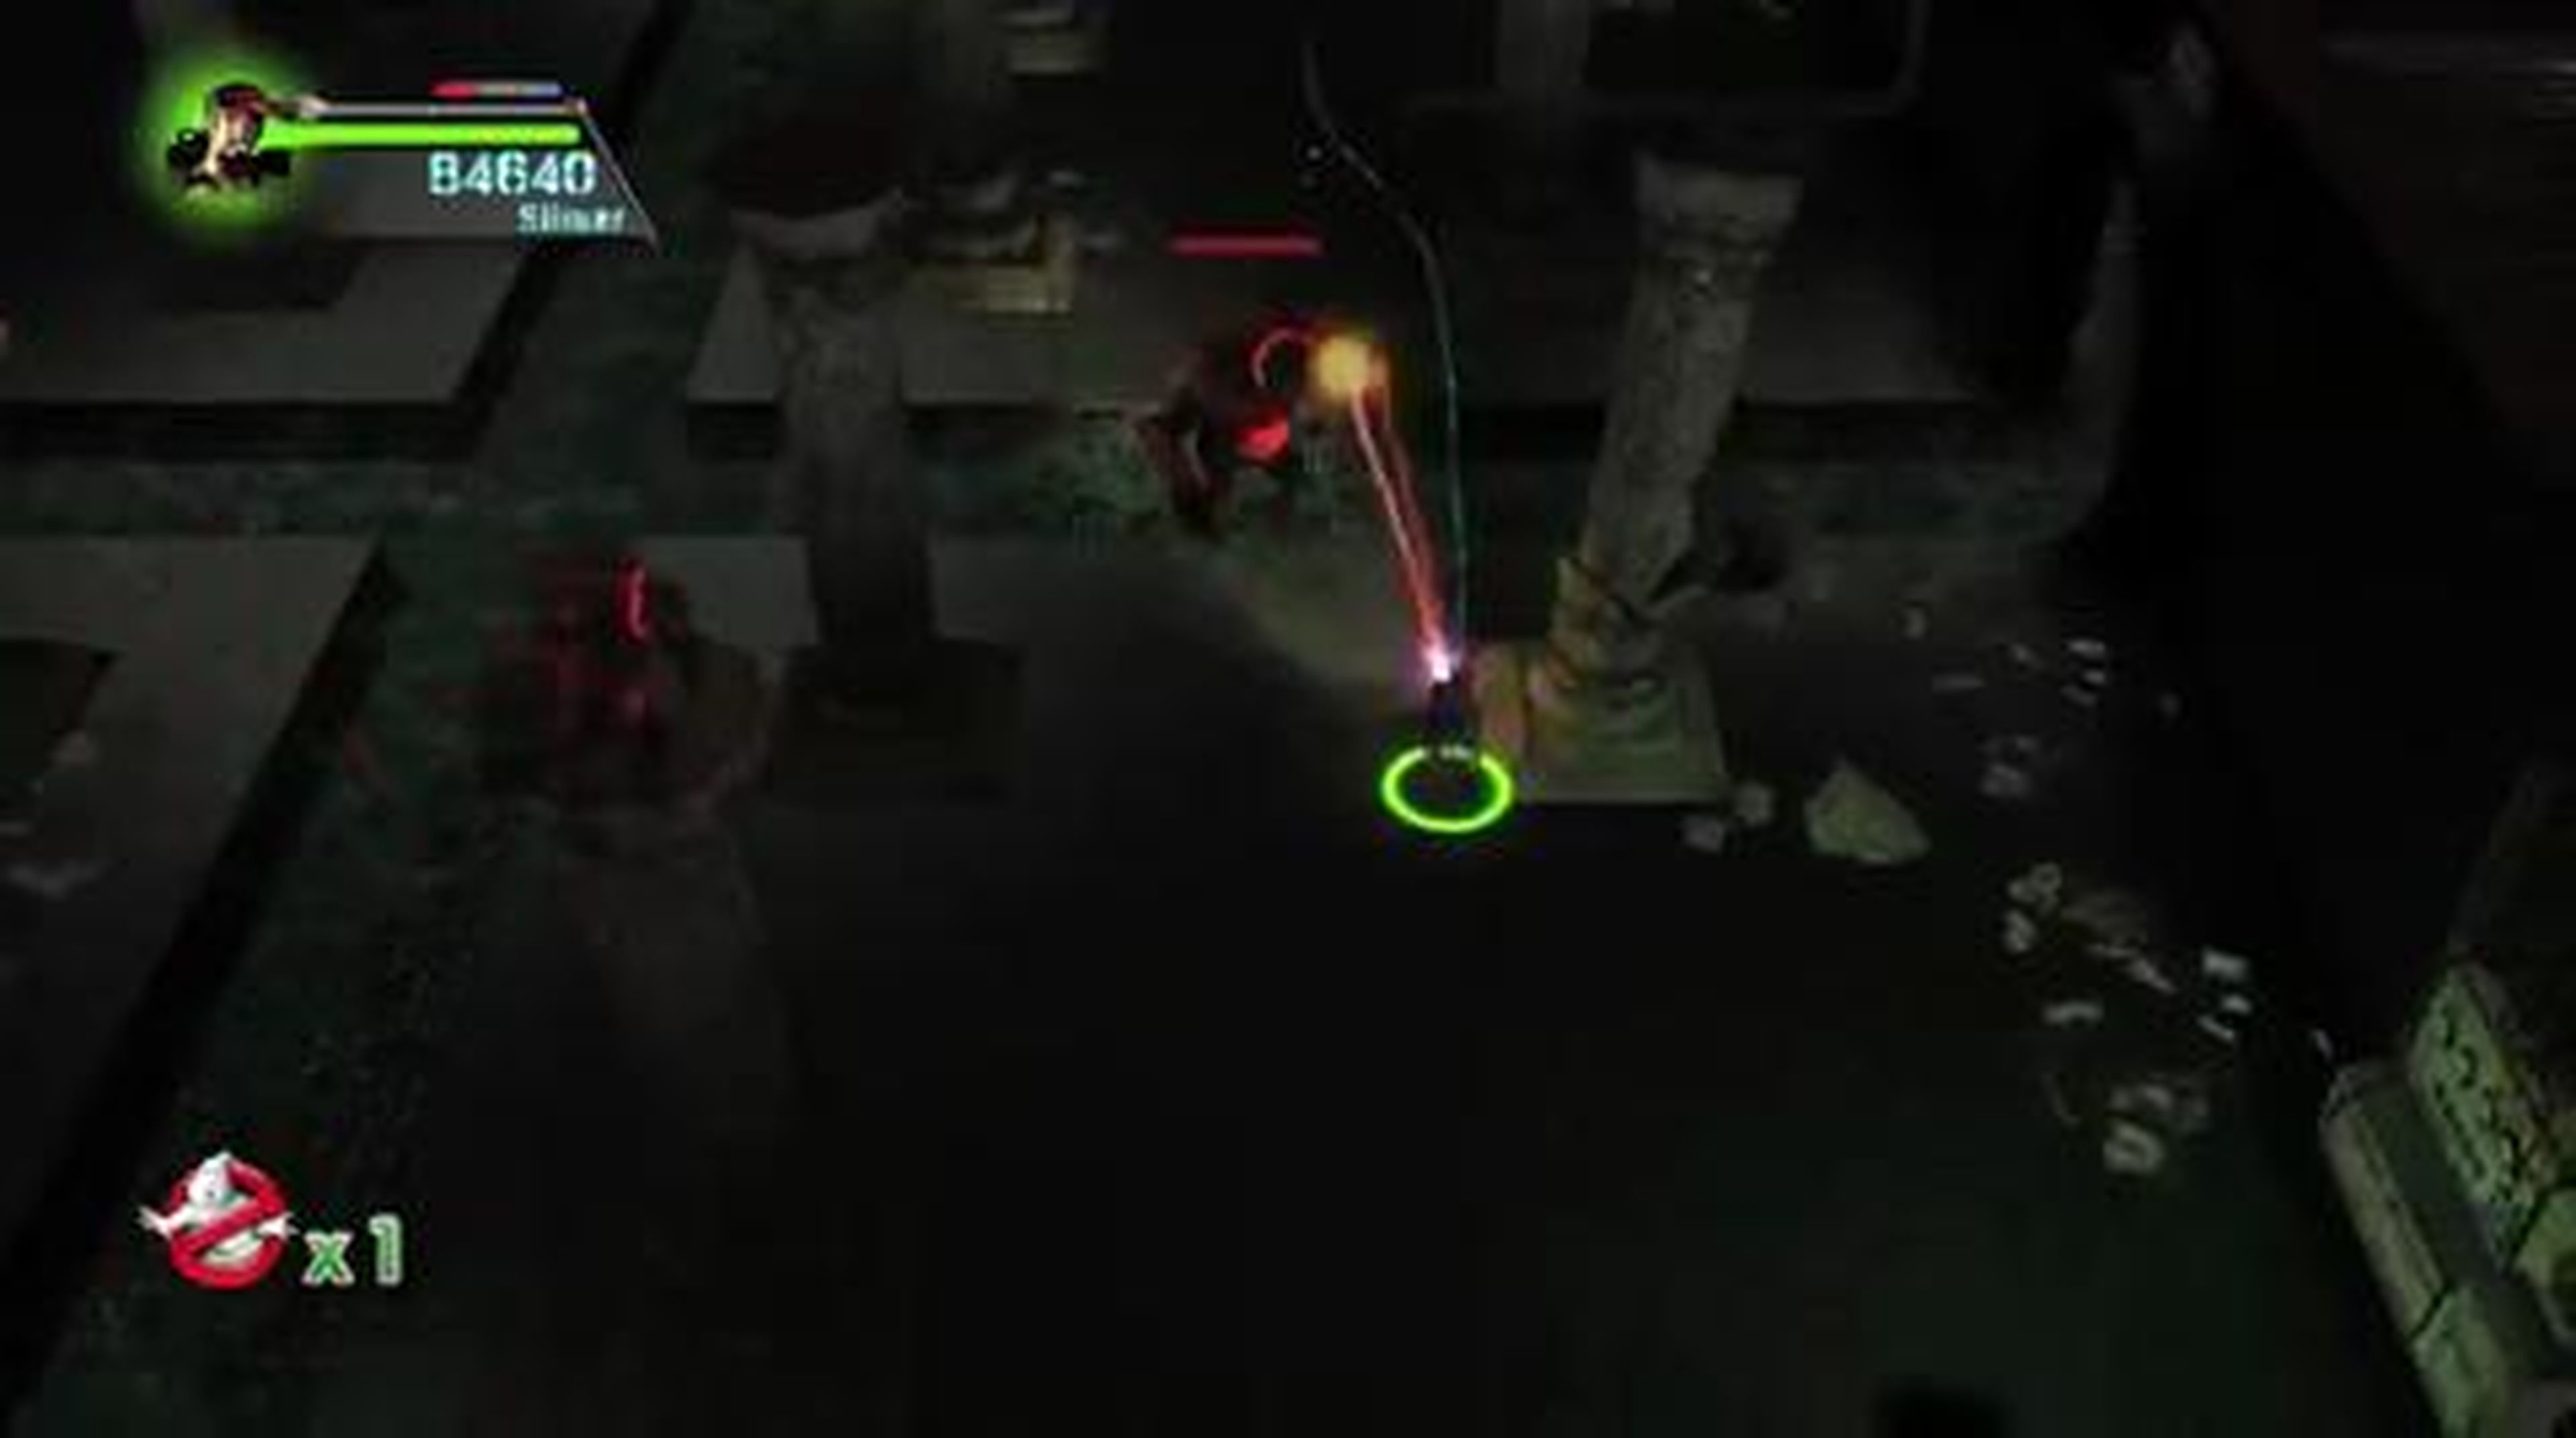 Ghostbusters Sanctum of Slime Challenge Pack DLC en HobbyNews.es